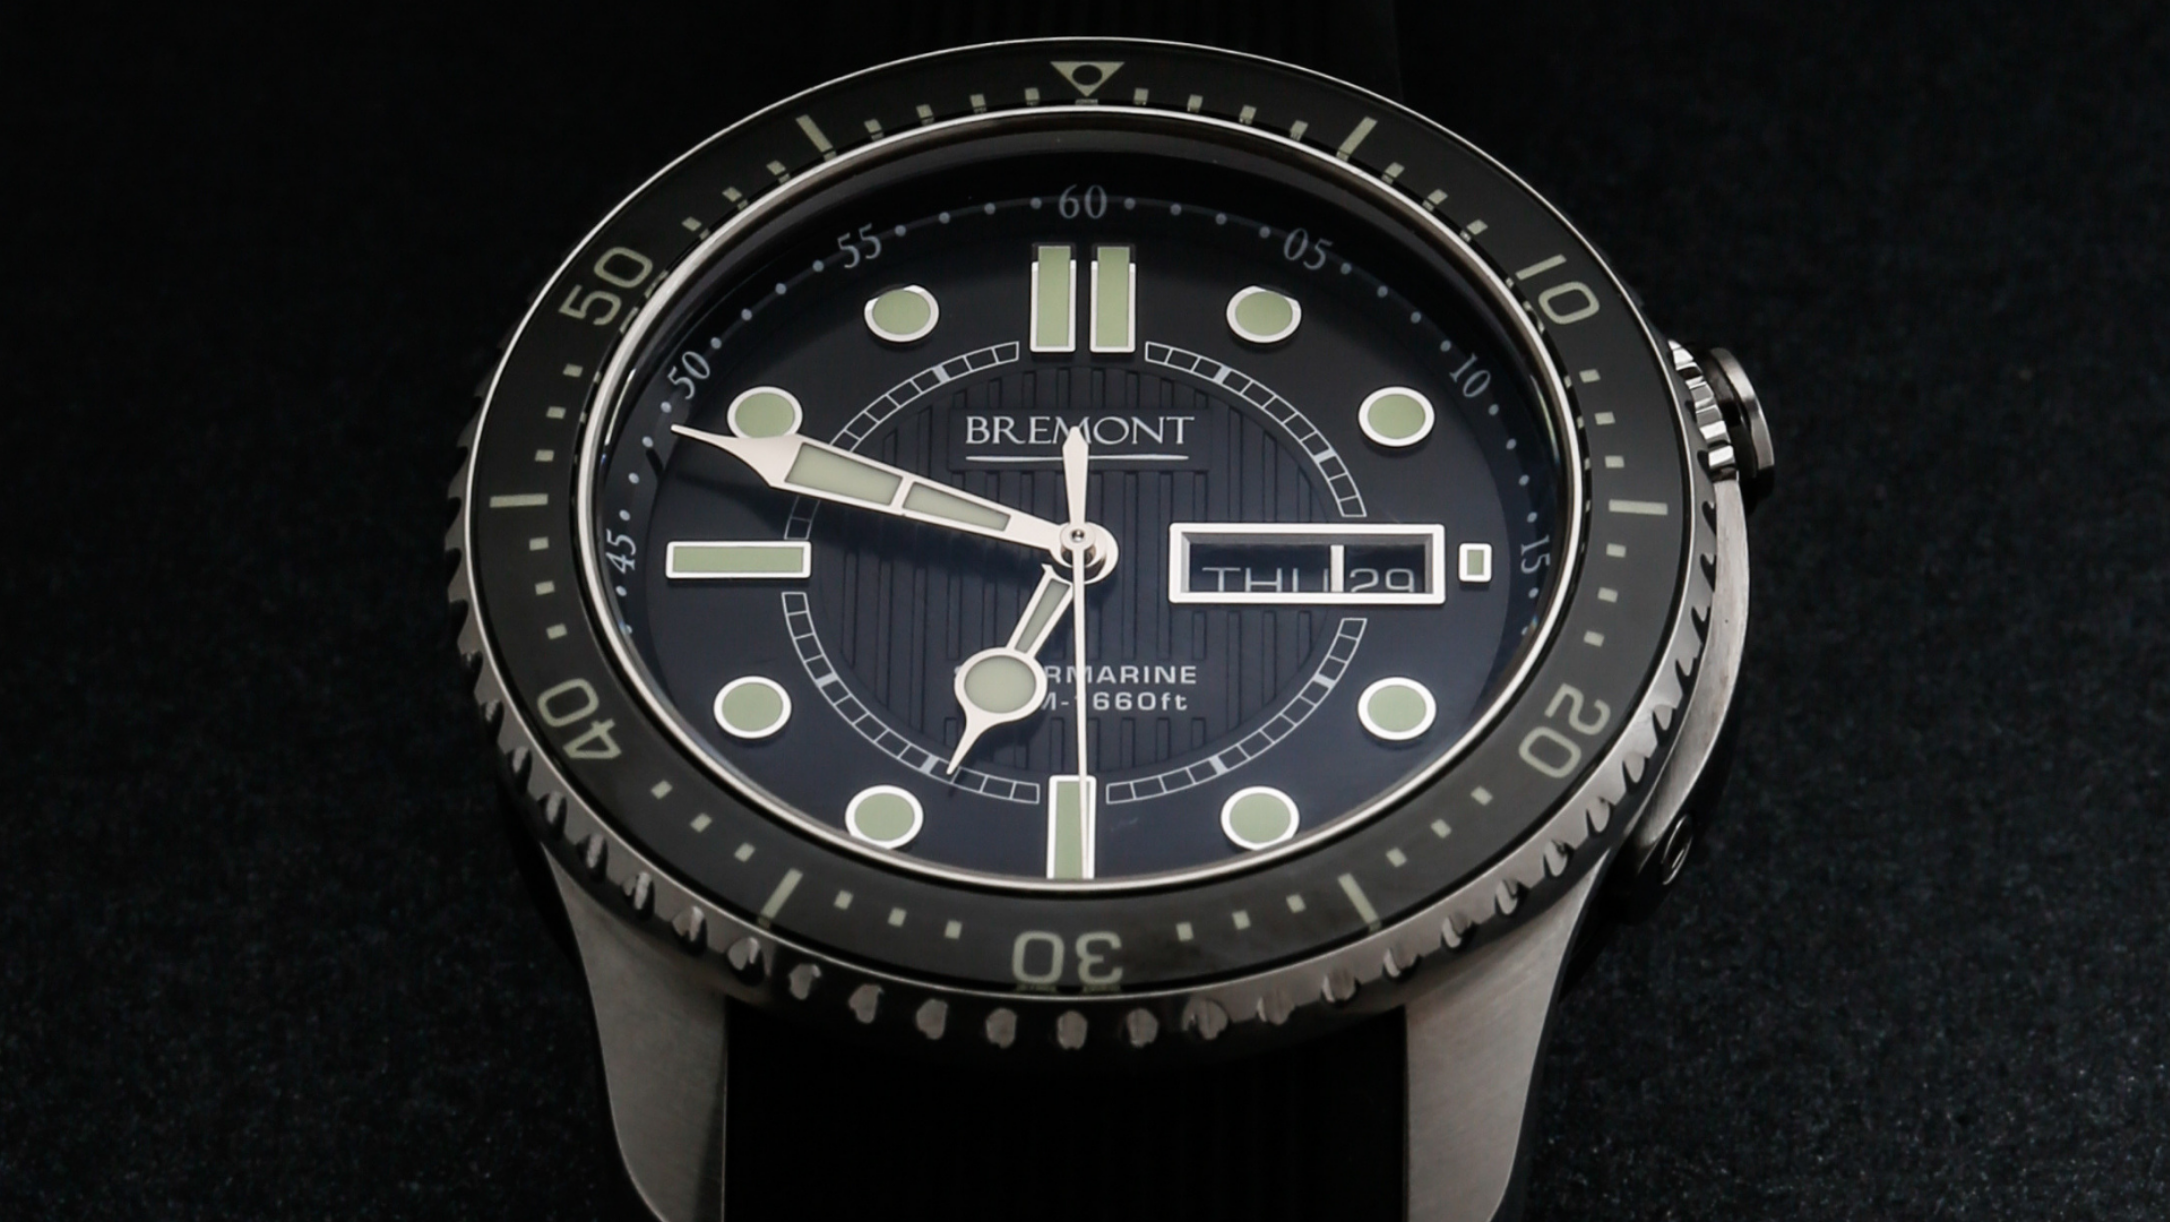 IT FITS ~ Luxury watch brand ambassadors - Art Of Time